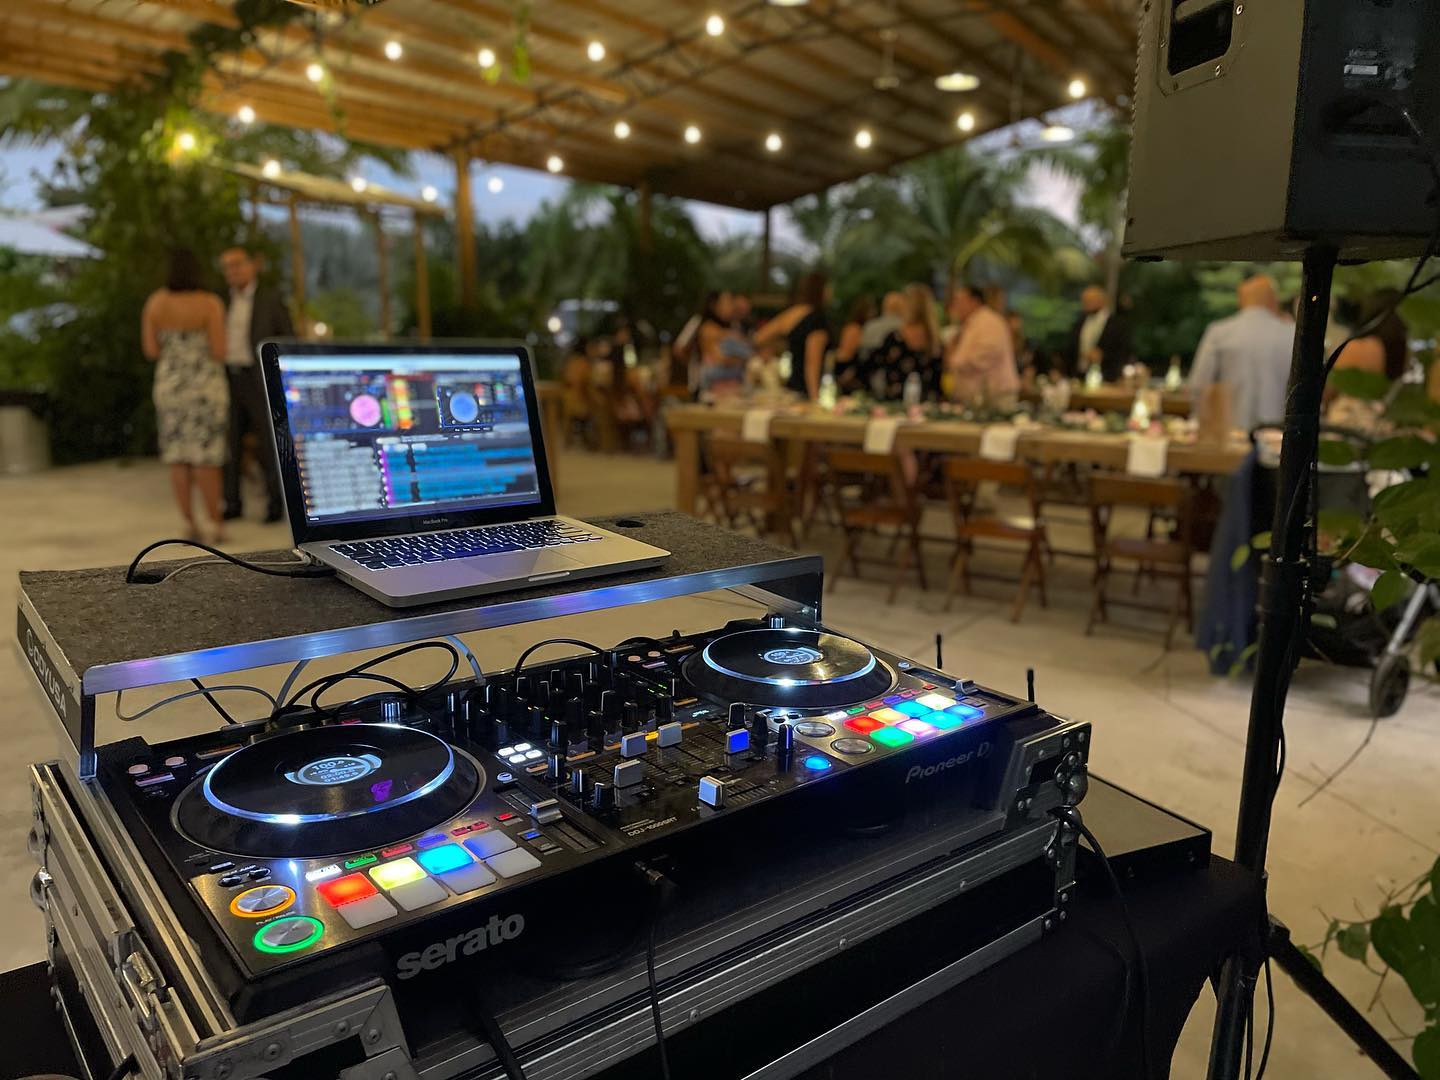 Miami Party DJ